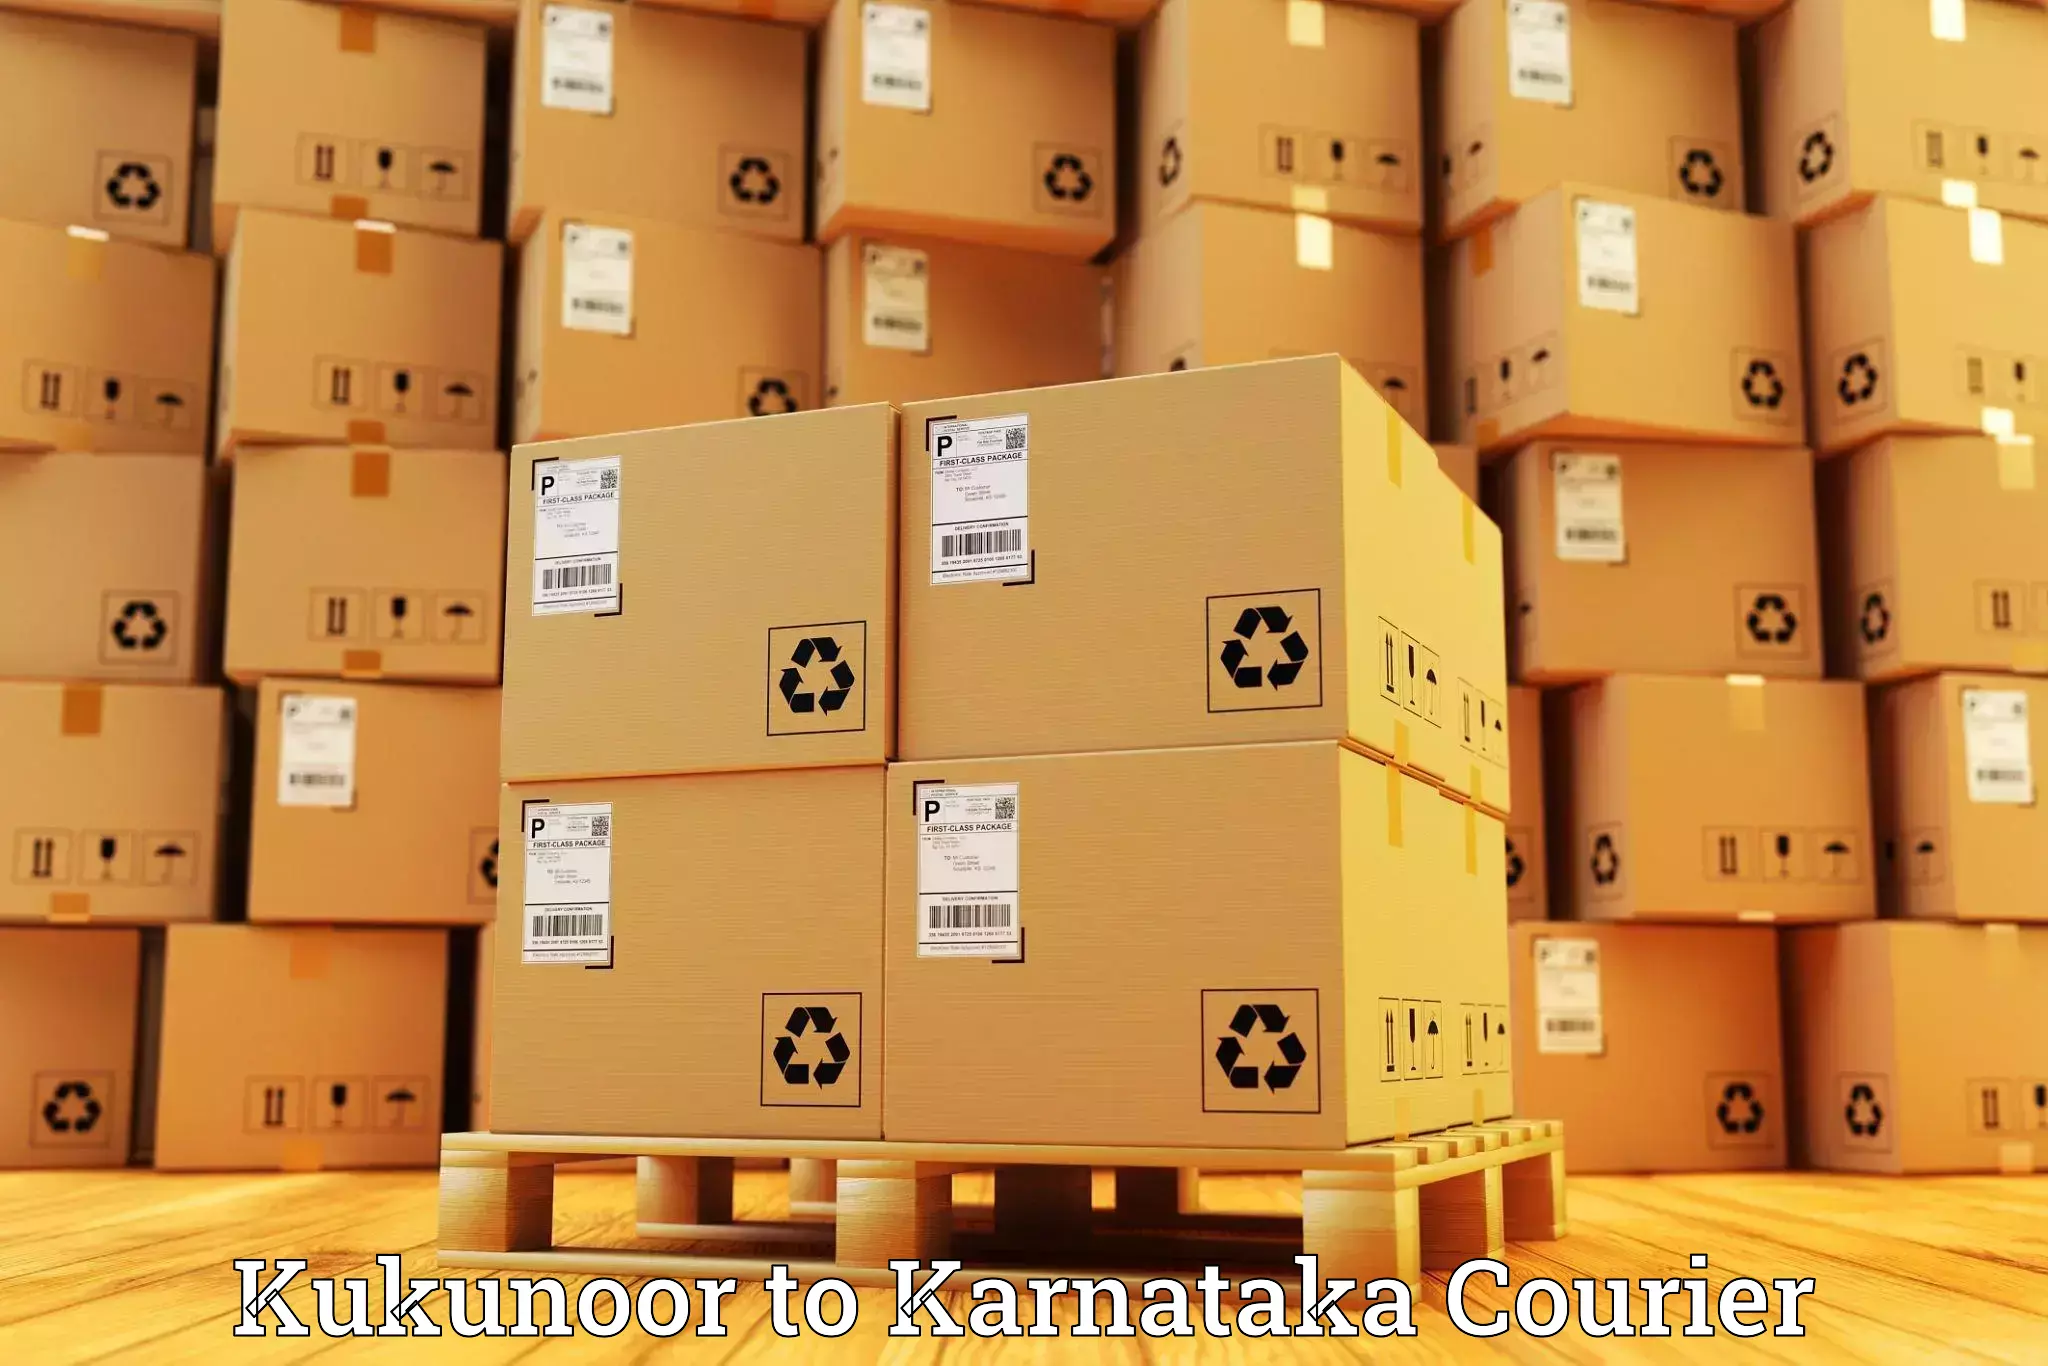 International parcel service Kukunoor to Basavakalyan